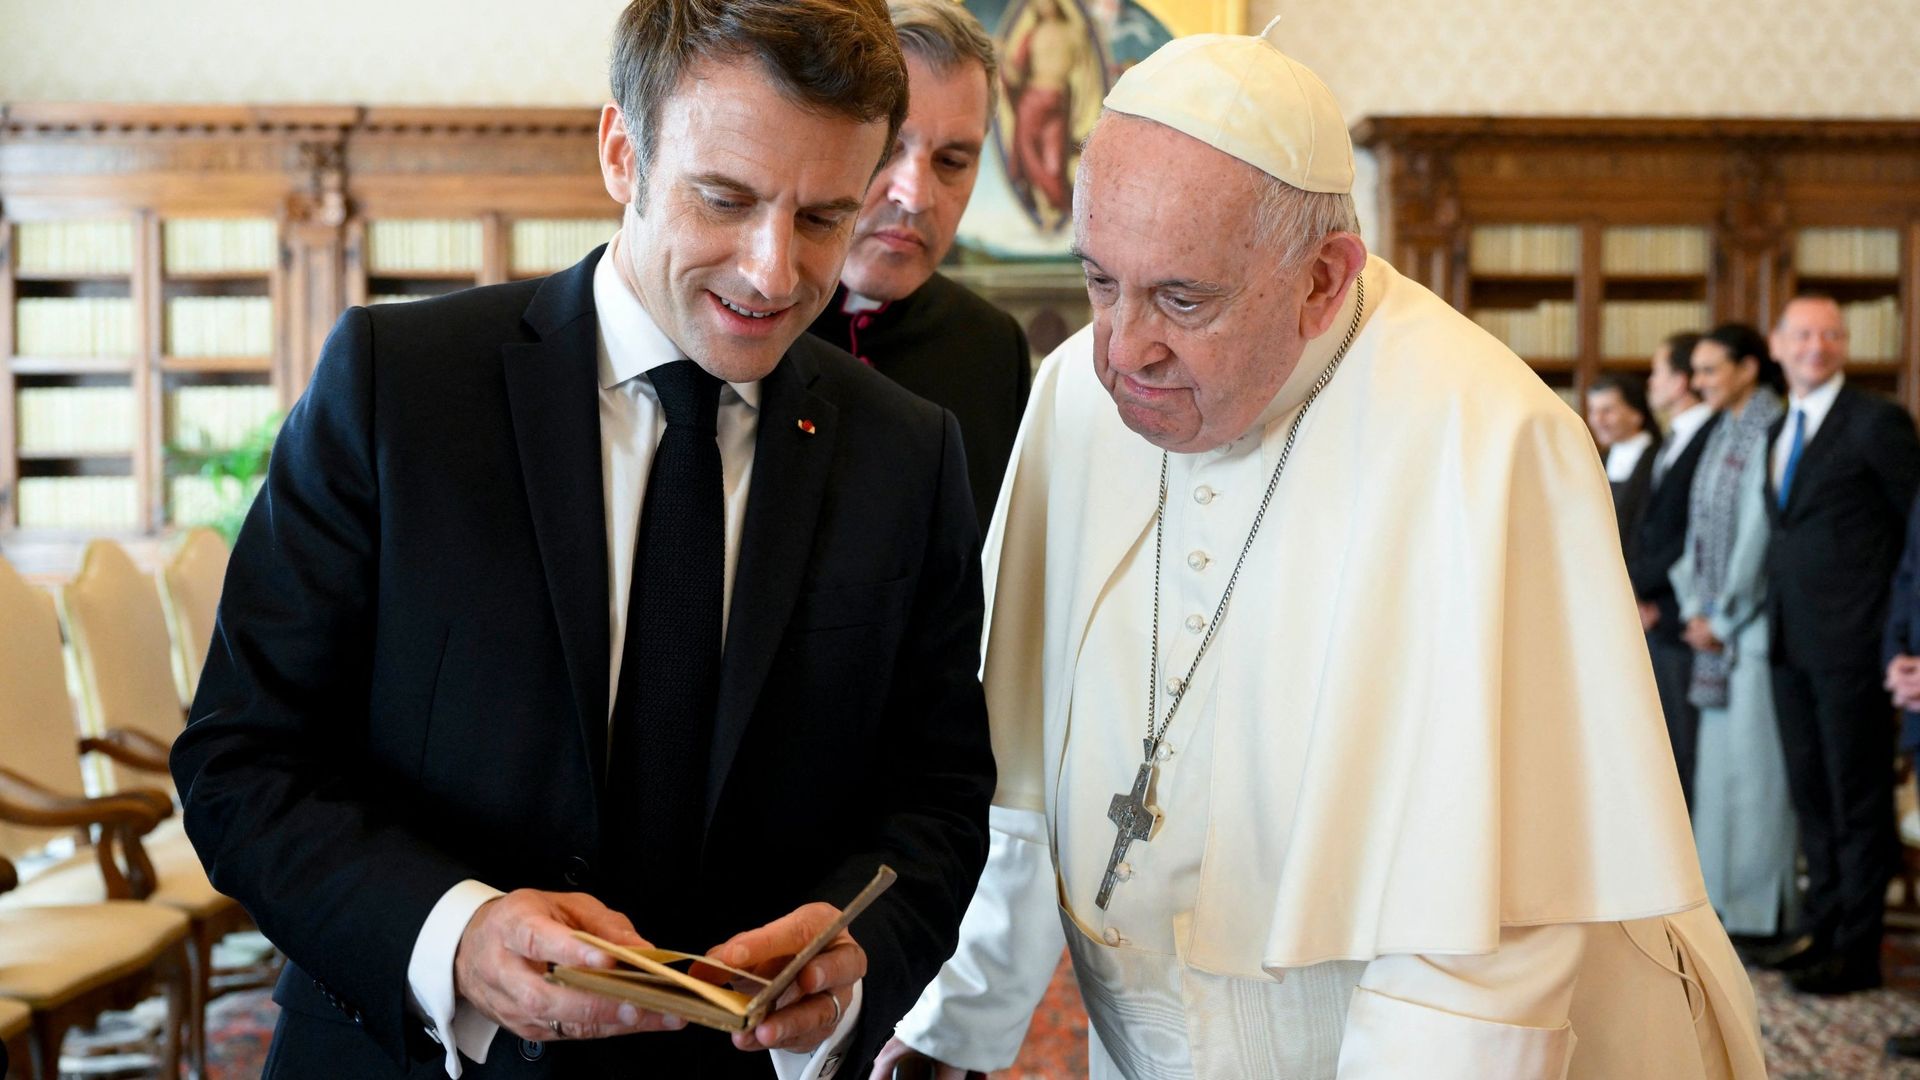 Cette photo publiée le 24 octobre 2022 par le bureau de presse du Vatican montre le pape François échangeant des cadeaux avec le président français Emmanuel Macron lors d’une audience privée au Vatican. Macron a donné à François un exemplaire de la premiè